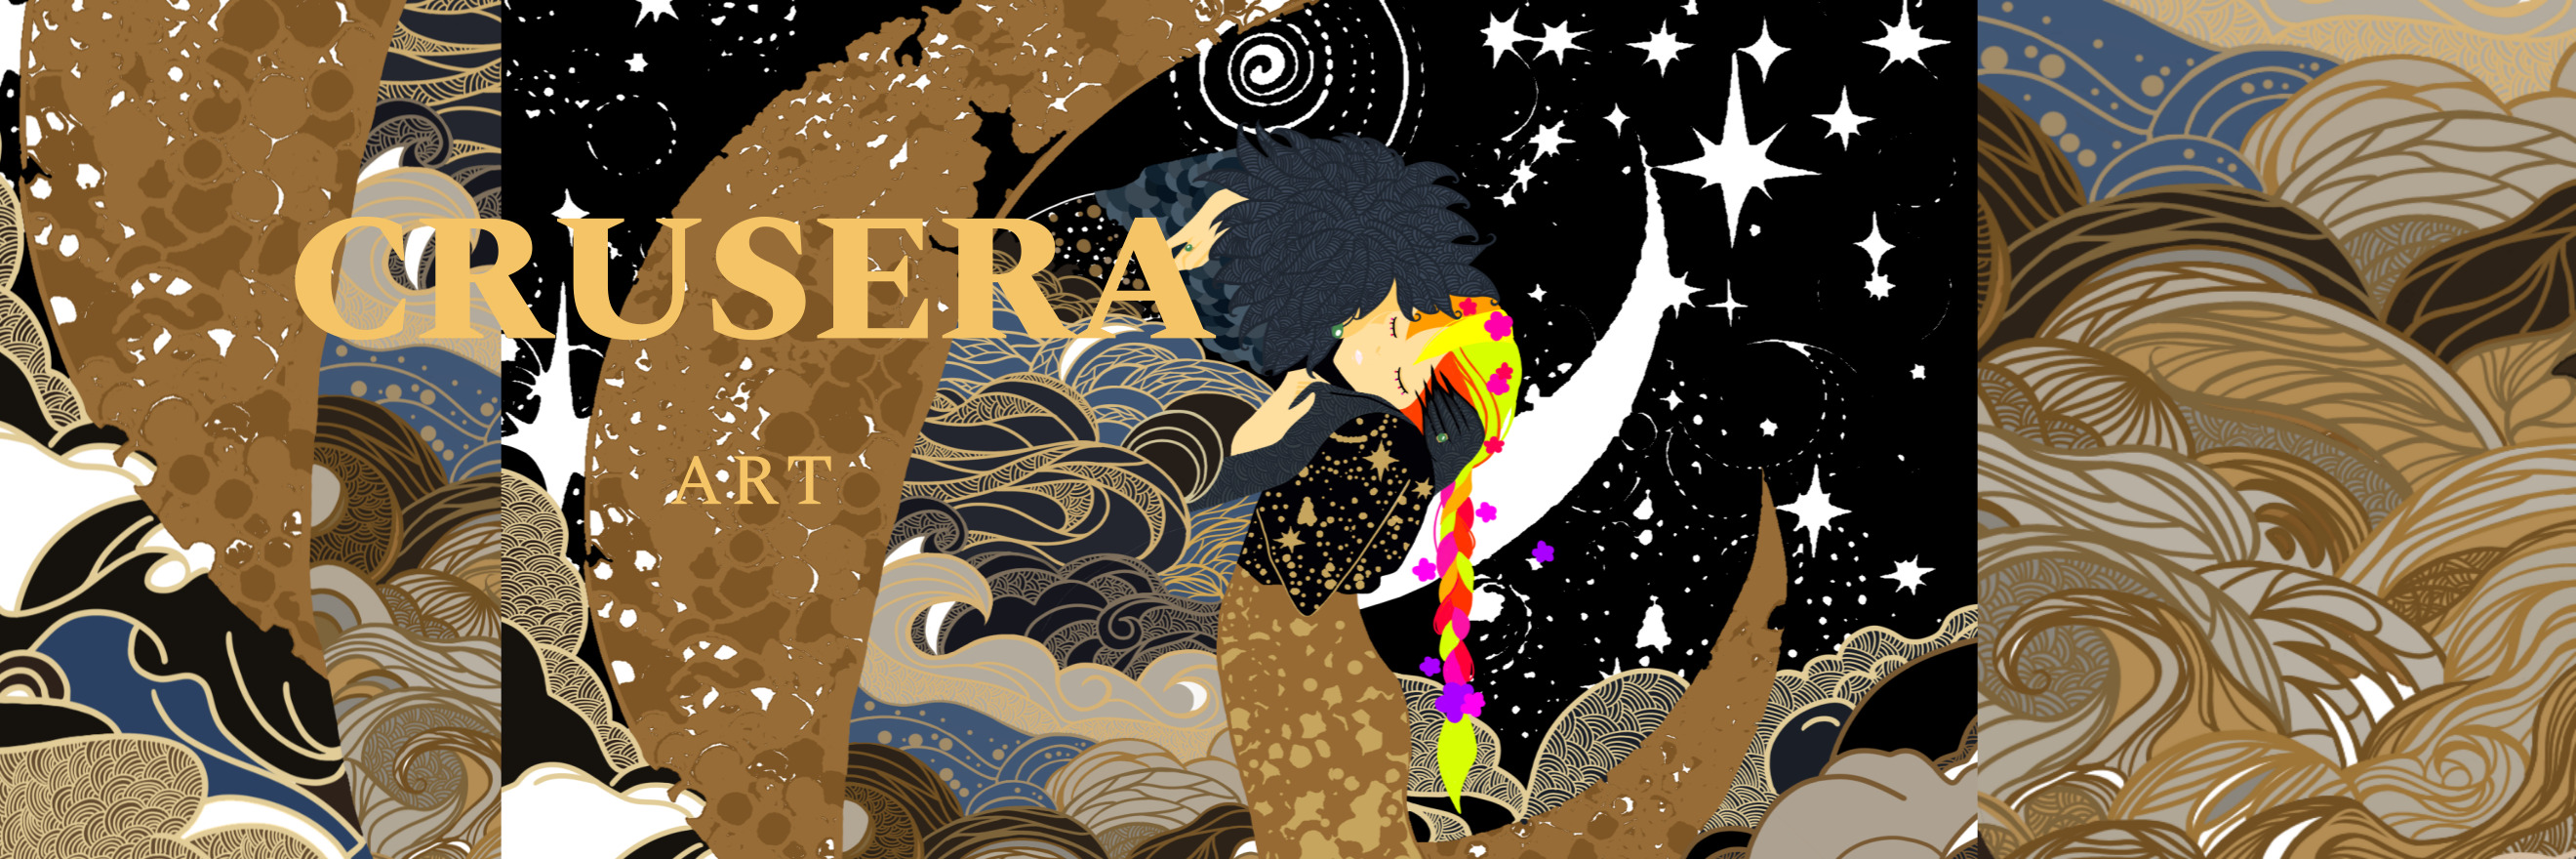 Crusera- banner